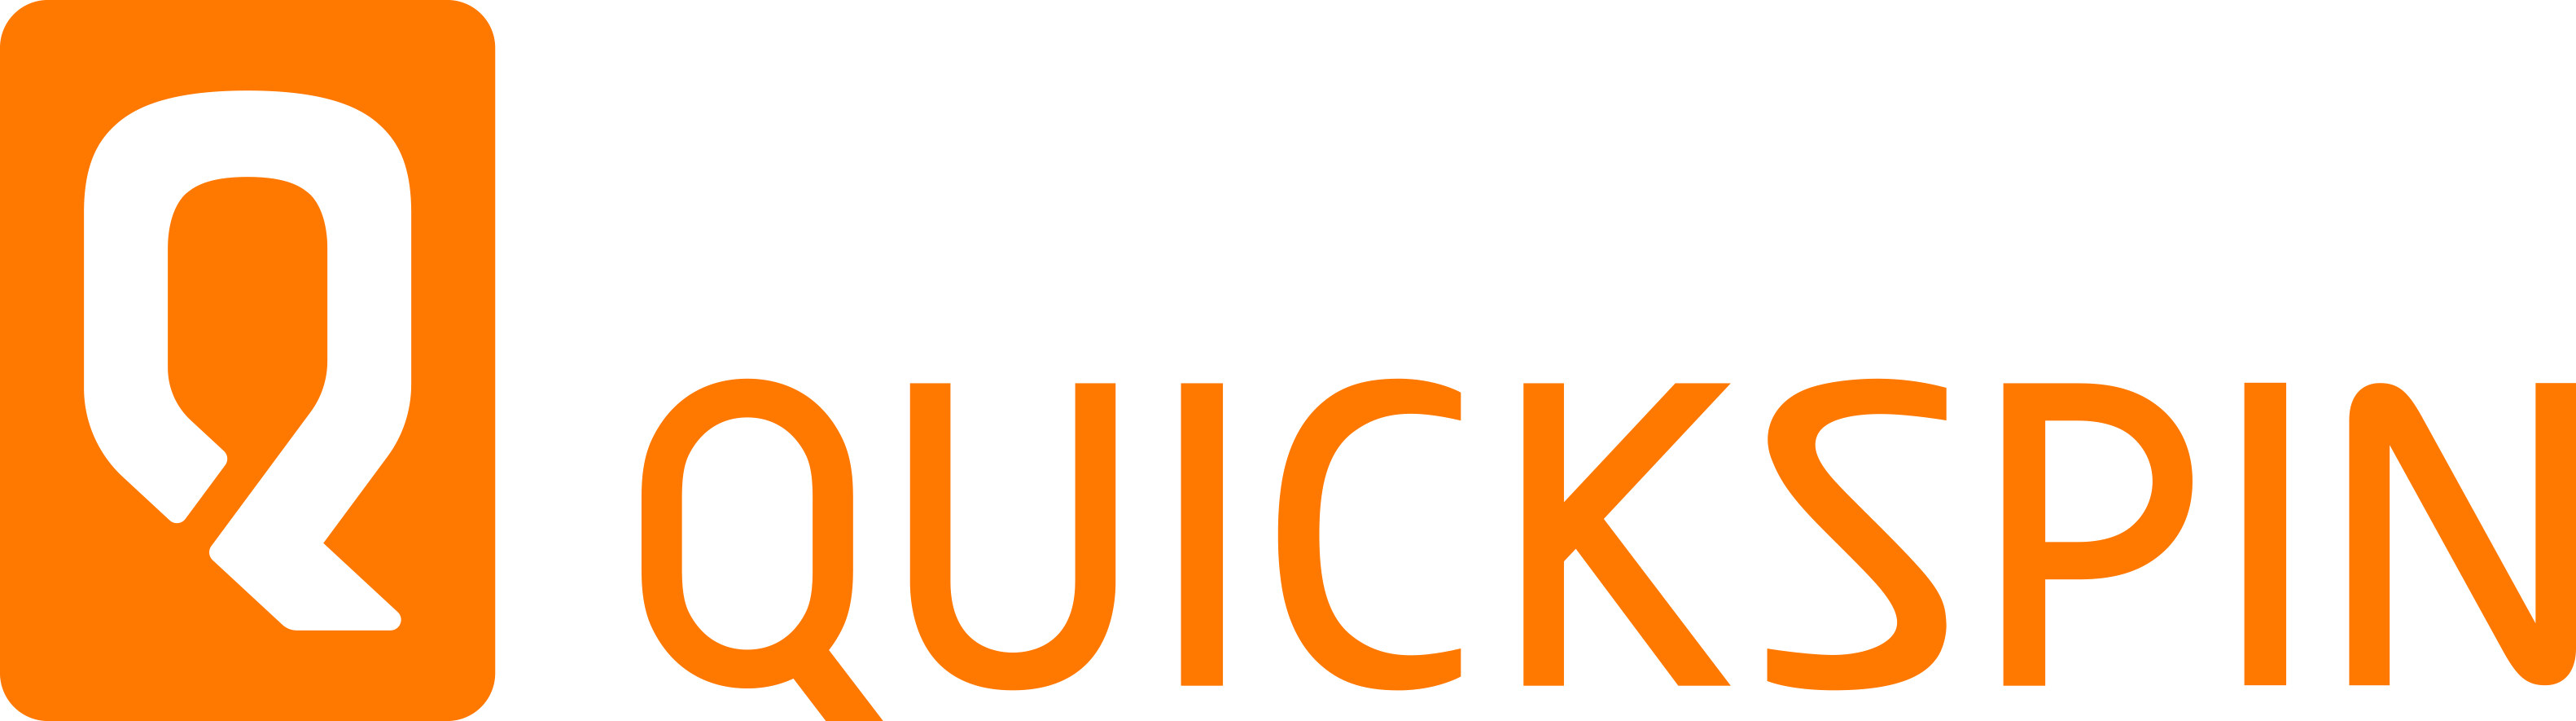 Quickspin provider - Emirates Casino Slot Guide